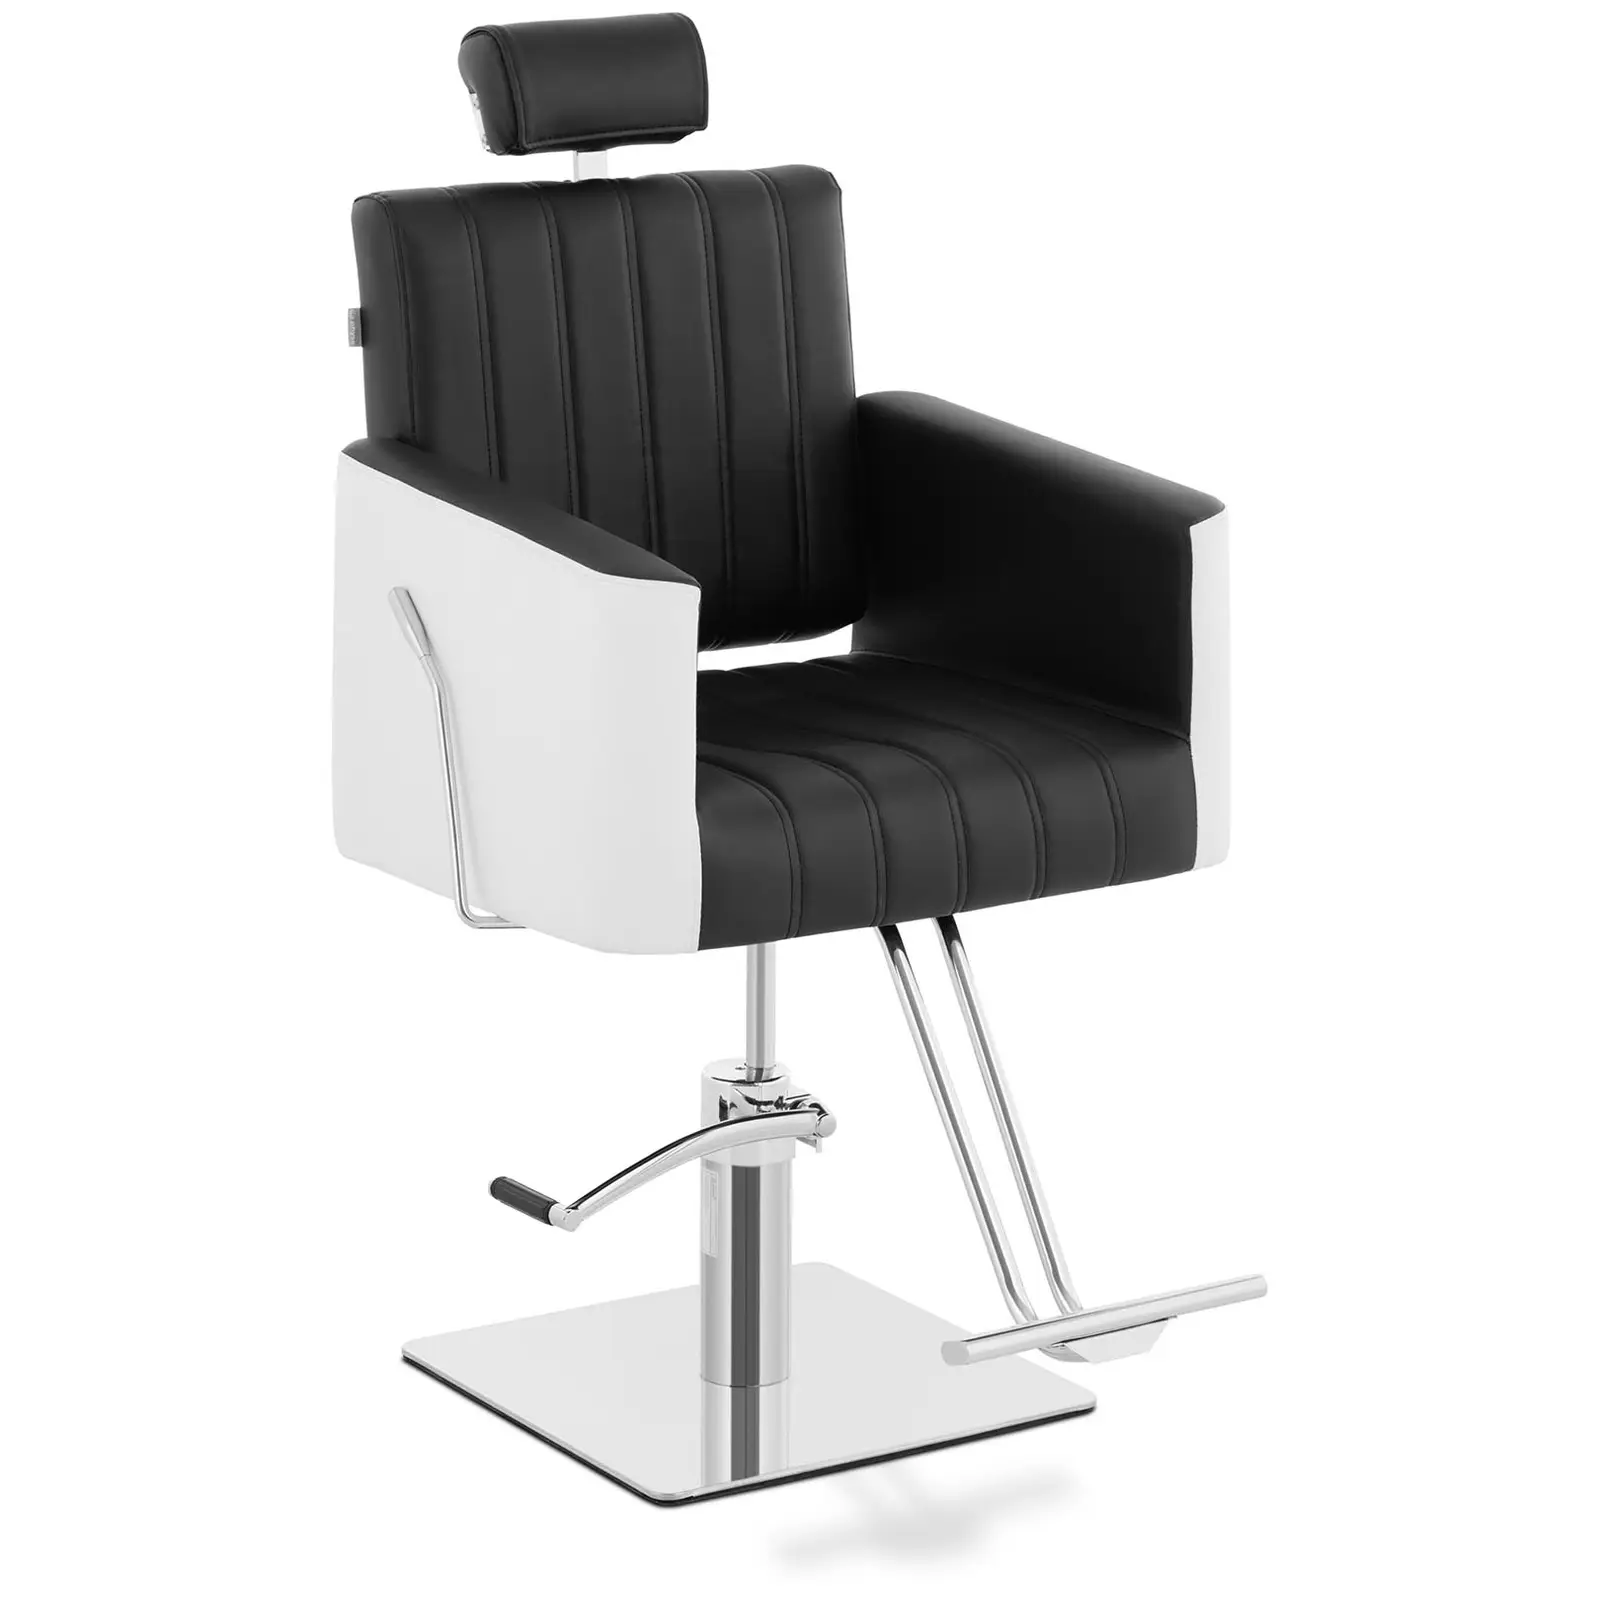 Салонен стол с подложка за крака - 470 x 630 мм - 150 кг - черен, бял